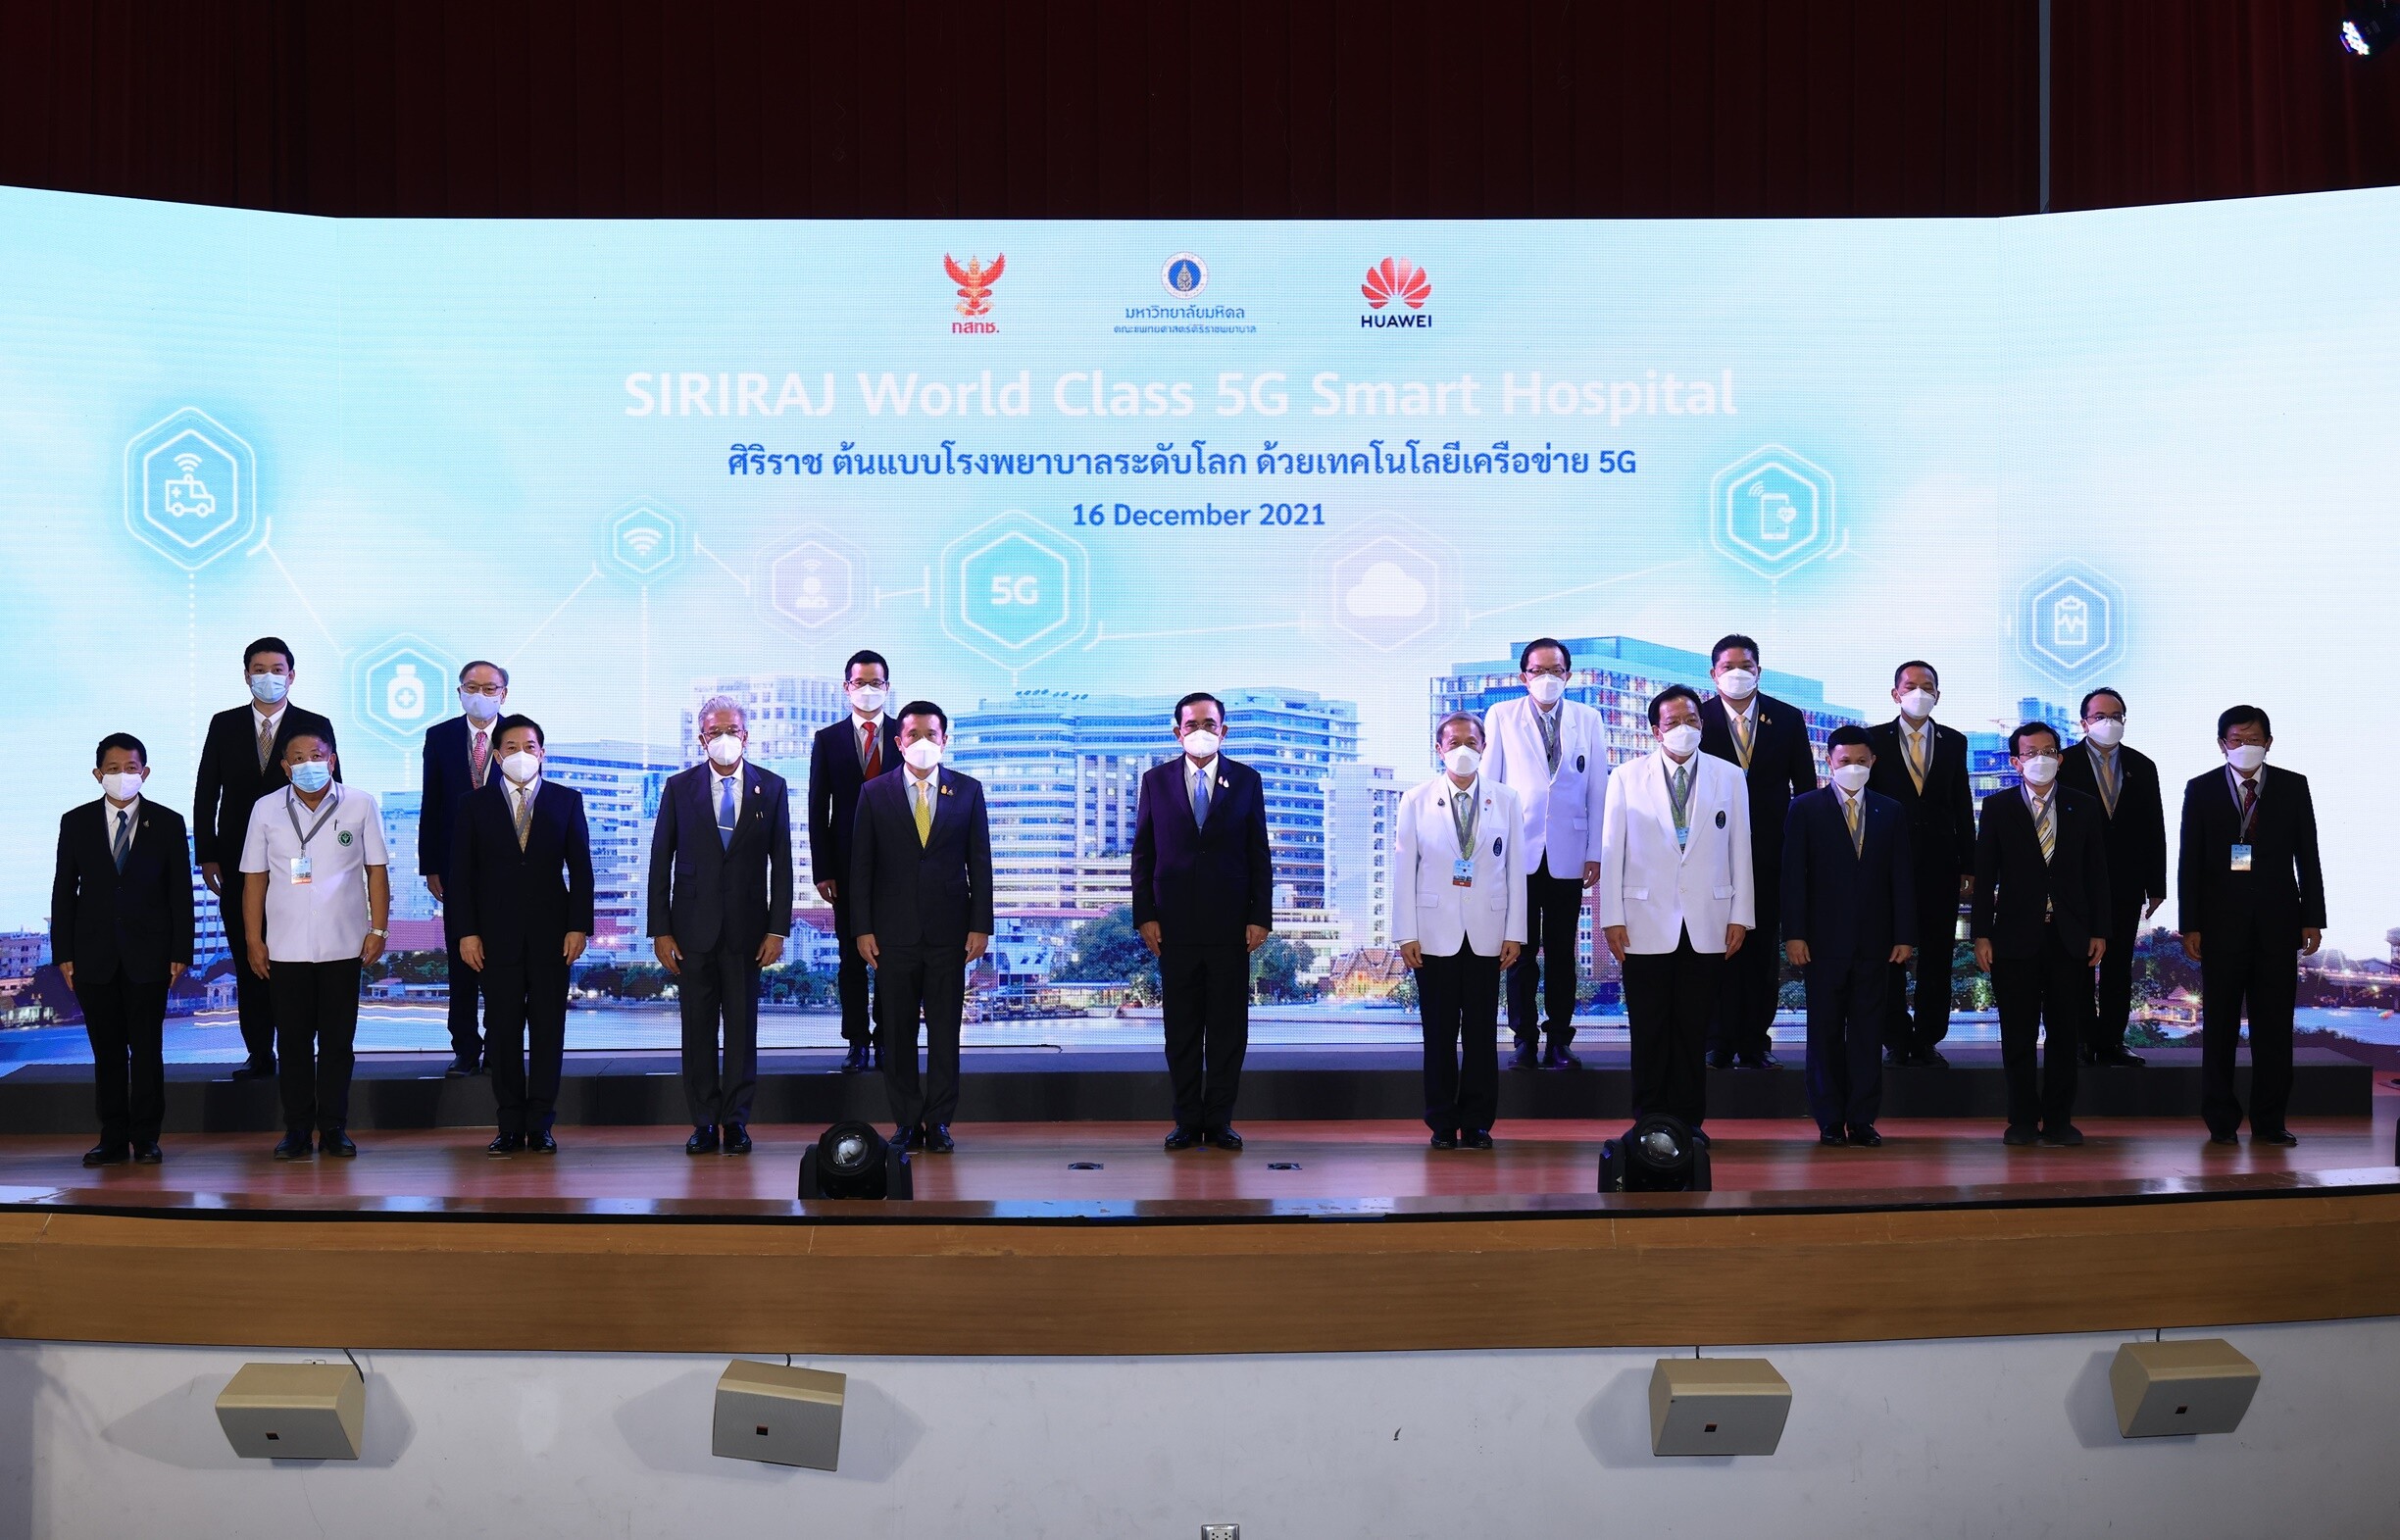 ศิริราช - กสทช. - หัวเว่ย ร่วมเปิดโครงการ "ศิริราชต้นแบบโรงพยาบาลอัจฉริยะ ระดับโลกด้วยเทคโนโลยีเครือข่าย 5G (Siriraj World Class 5G Smart Hospital)"